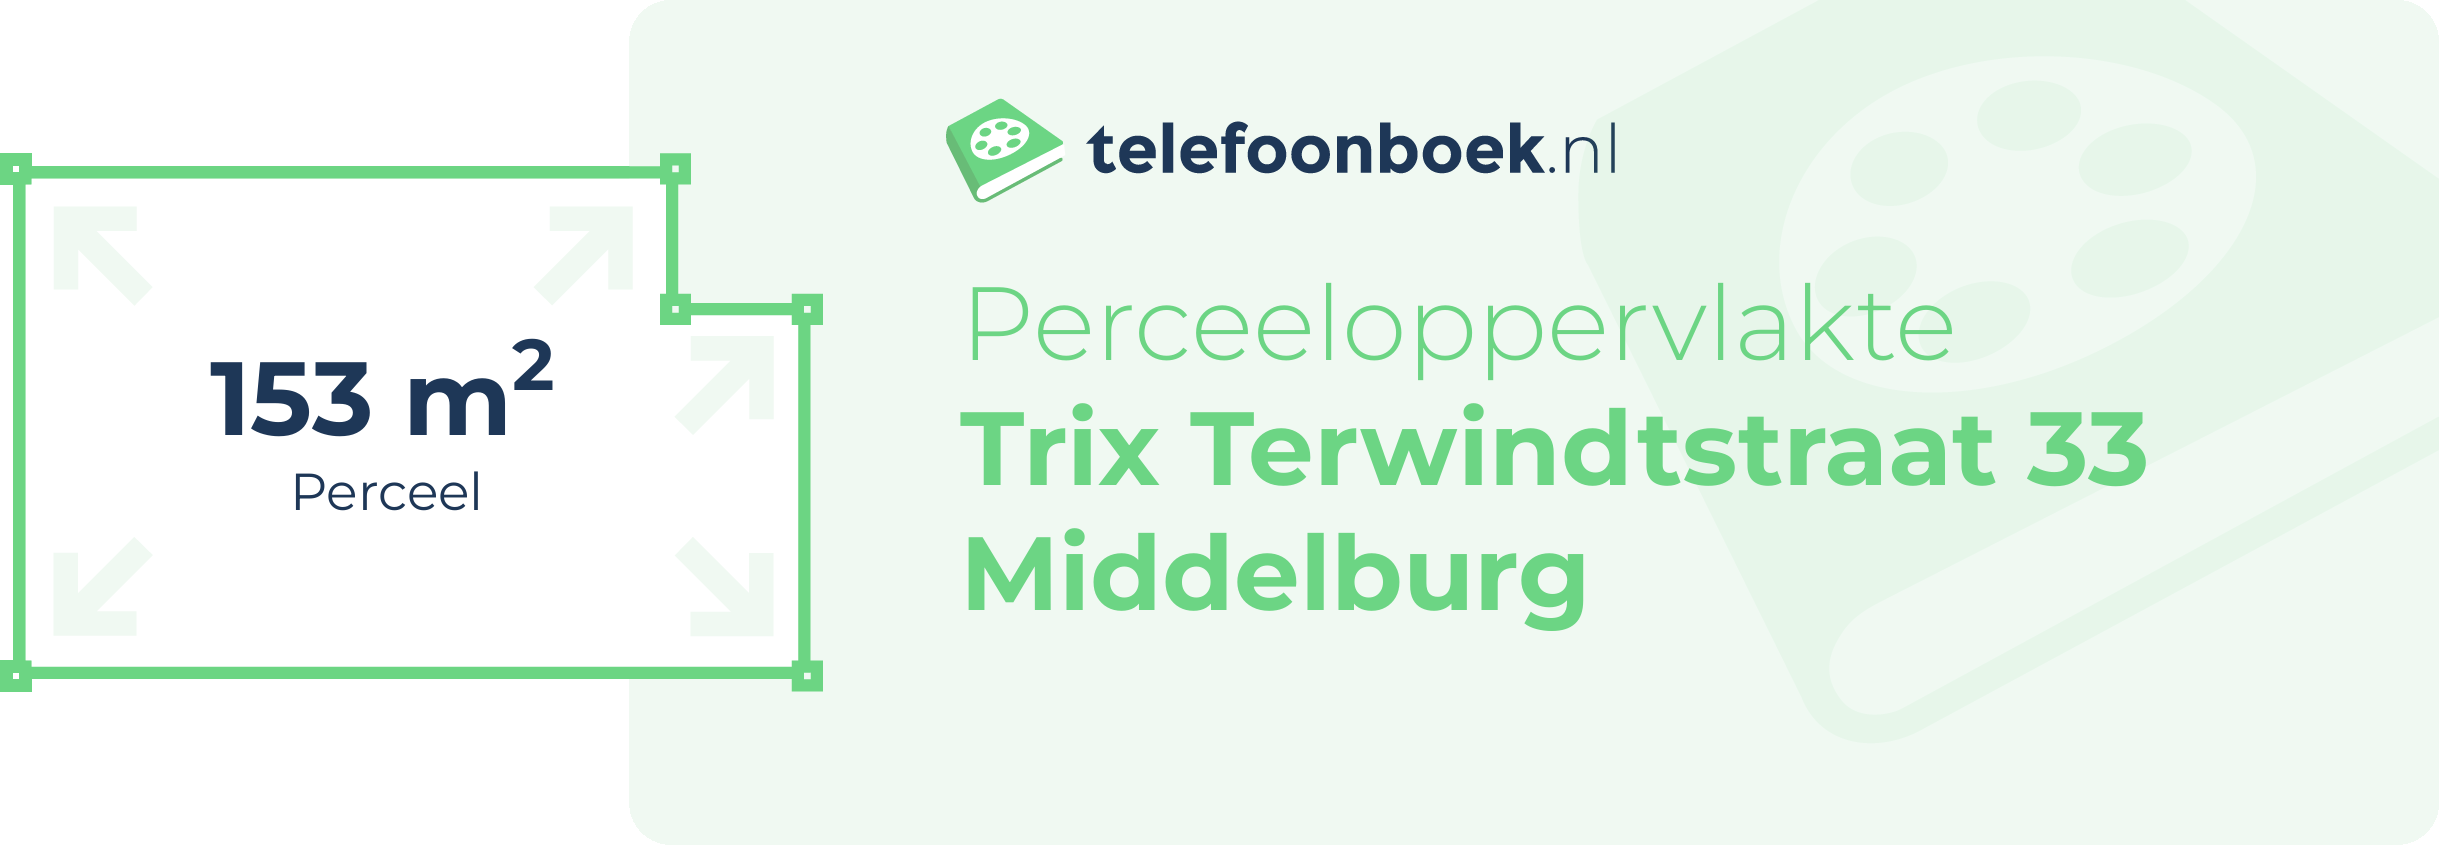 Perceeloppervlakte Trix Terwindtstraat 33 Middelburg